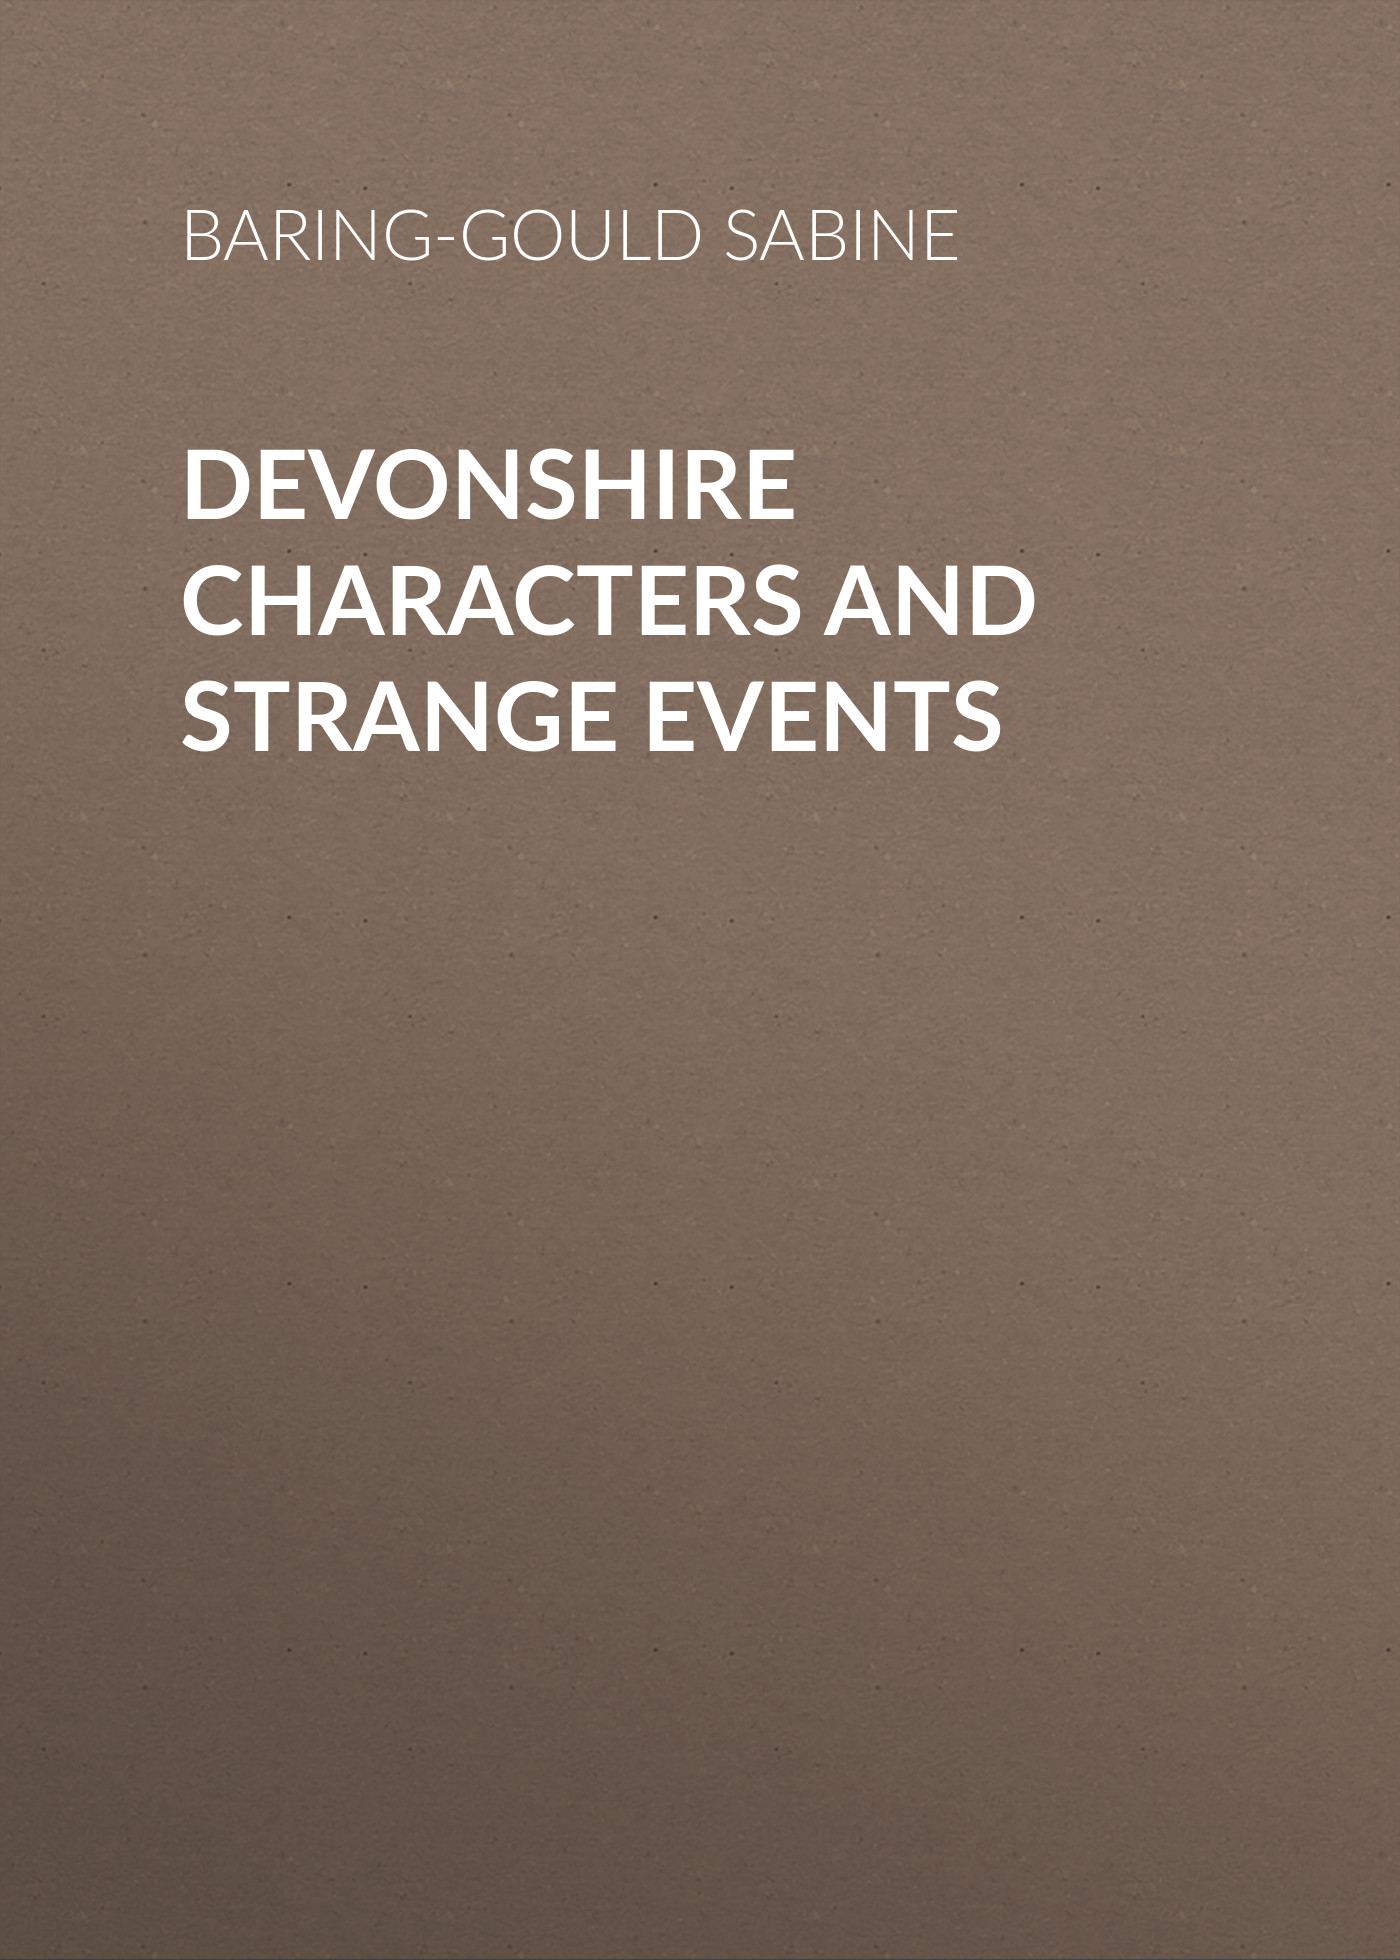 Книга Devonshire Characters and Strange Events из серии , созданная Sabine Baring-Gould, может относится к жанру Зарубежная старинная литература, Зарубежная классика. Стоимость электронной книги Devonshire Characters and Strange Events с идентификатором 24177156 составляет 0 руб.